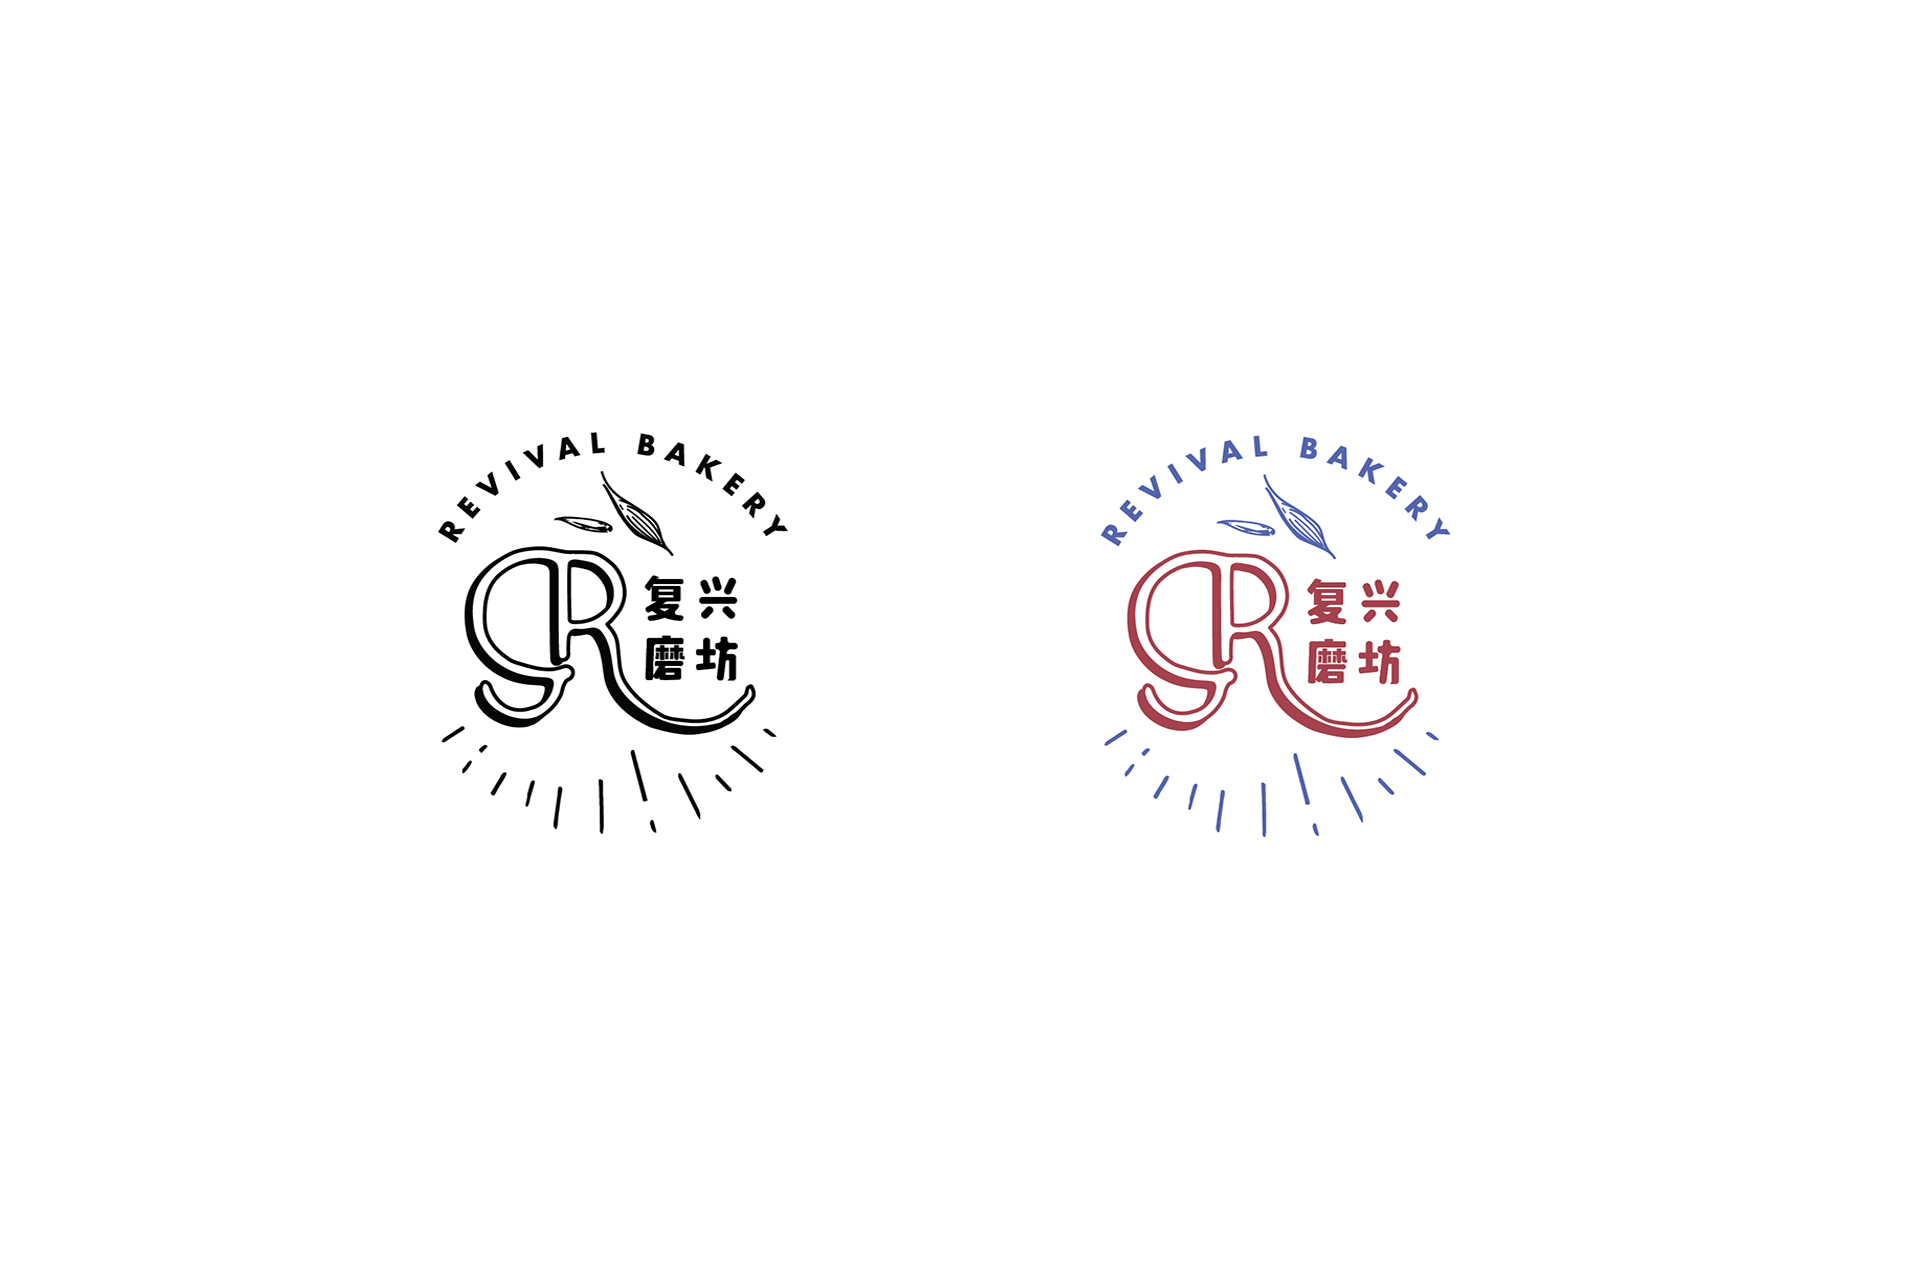 0r_revival_logo2.jpg